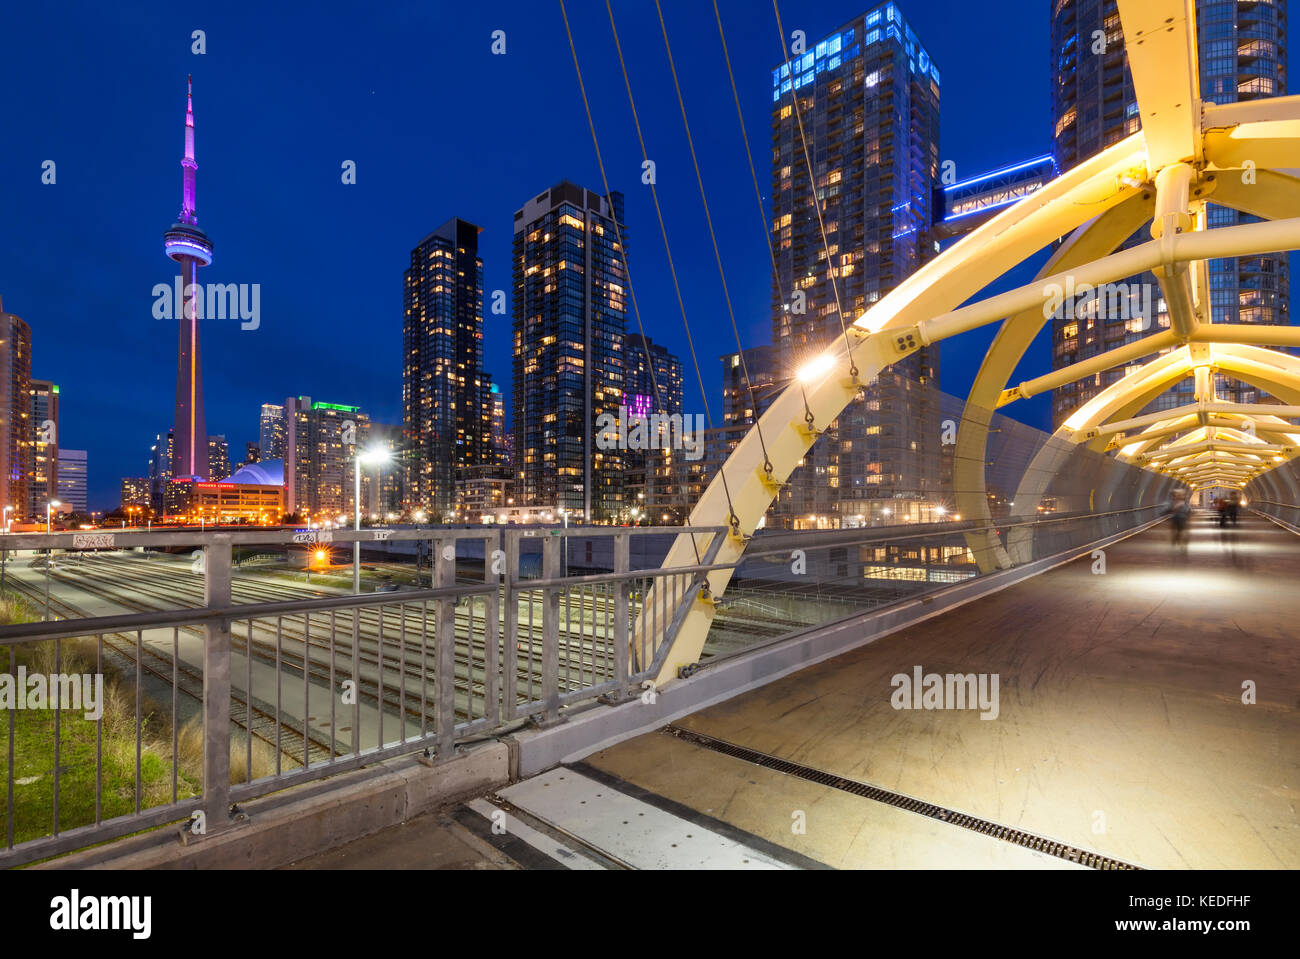 El Puente de Luz (puente de luz) diseñado por Francisco Gazitua puente que conecta a CityPlace Concord Front St con el horizonte de Toronto. Foto de stock